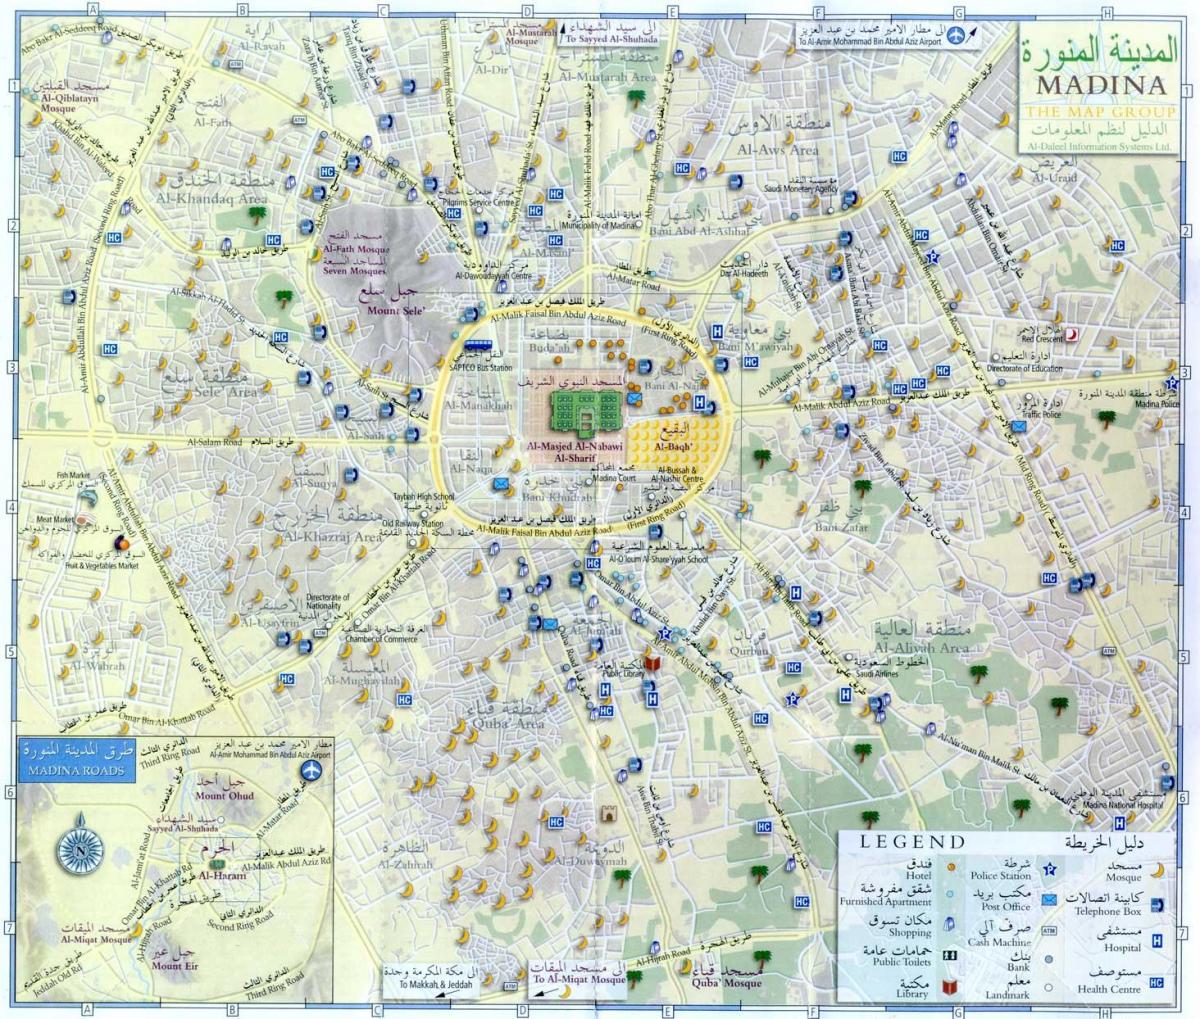 Plan des monuments de Mecca (Makkah)